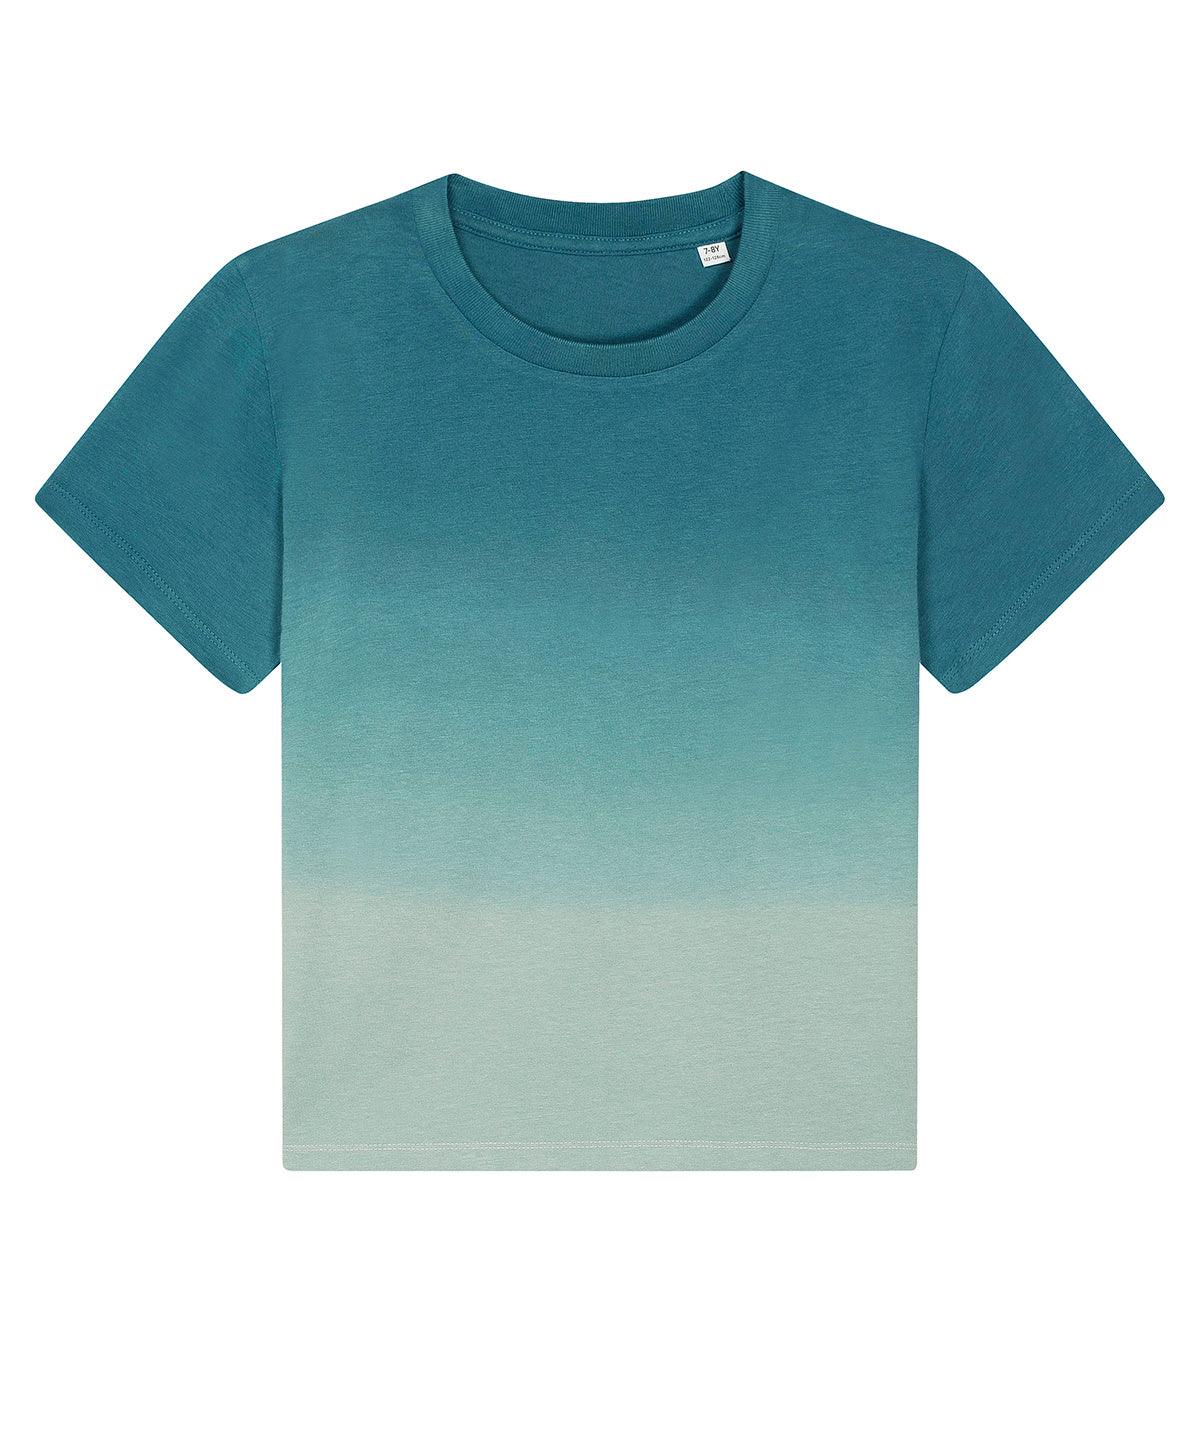 Stuttermabolir - Mini Creator Dip-dye Kids T-shirt (STTK940)